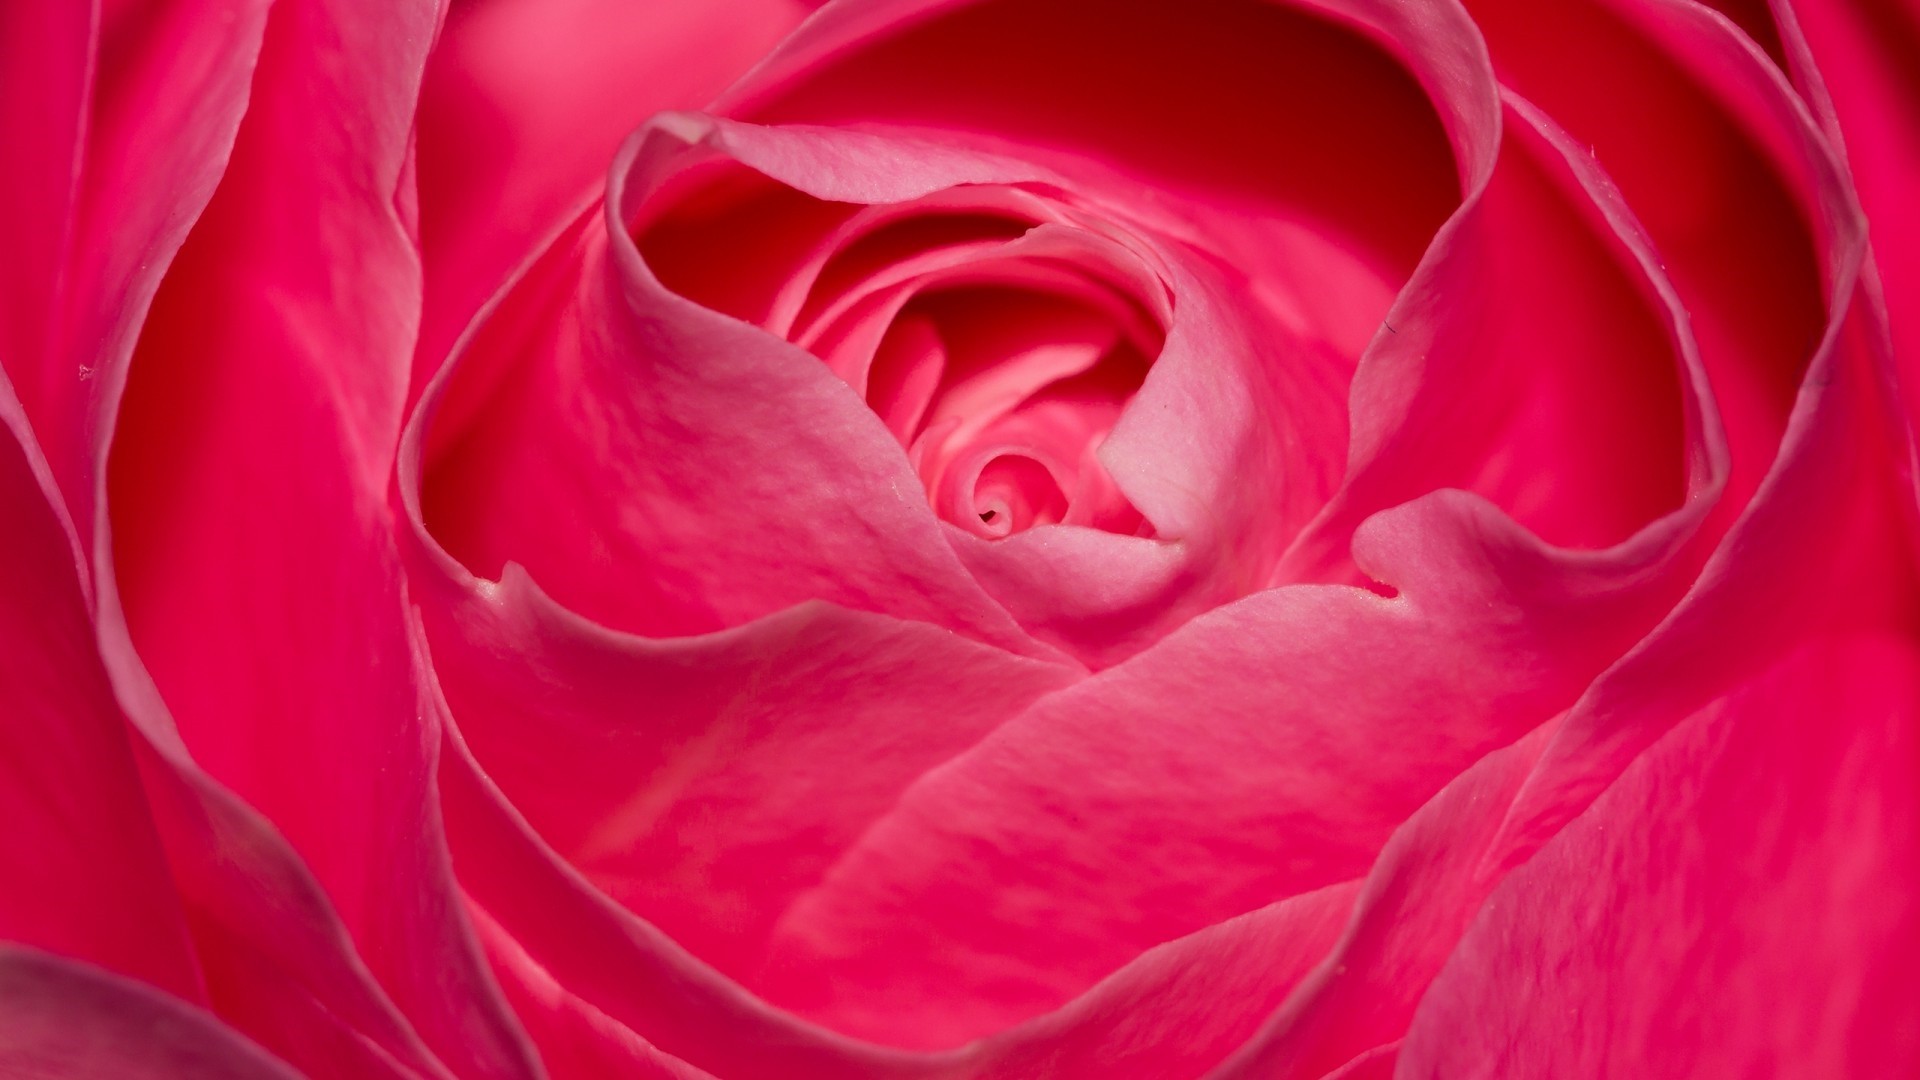 Pink Rose Wallpaper image hd